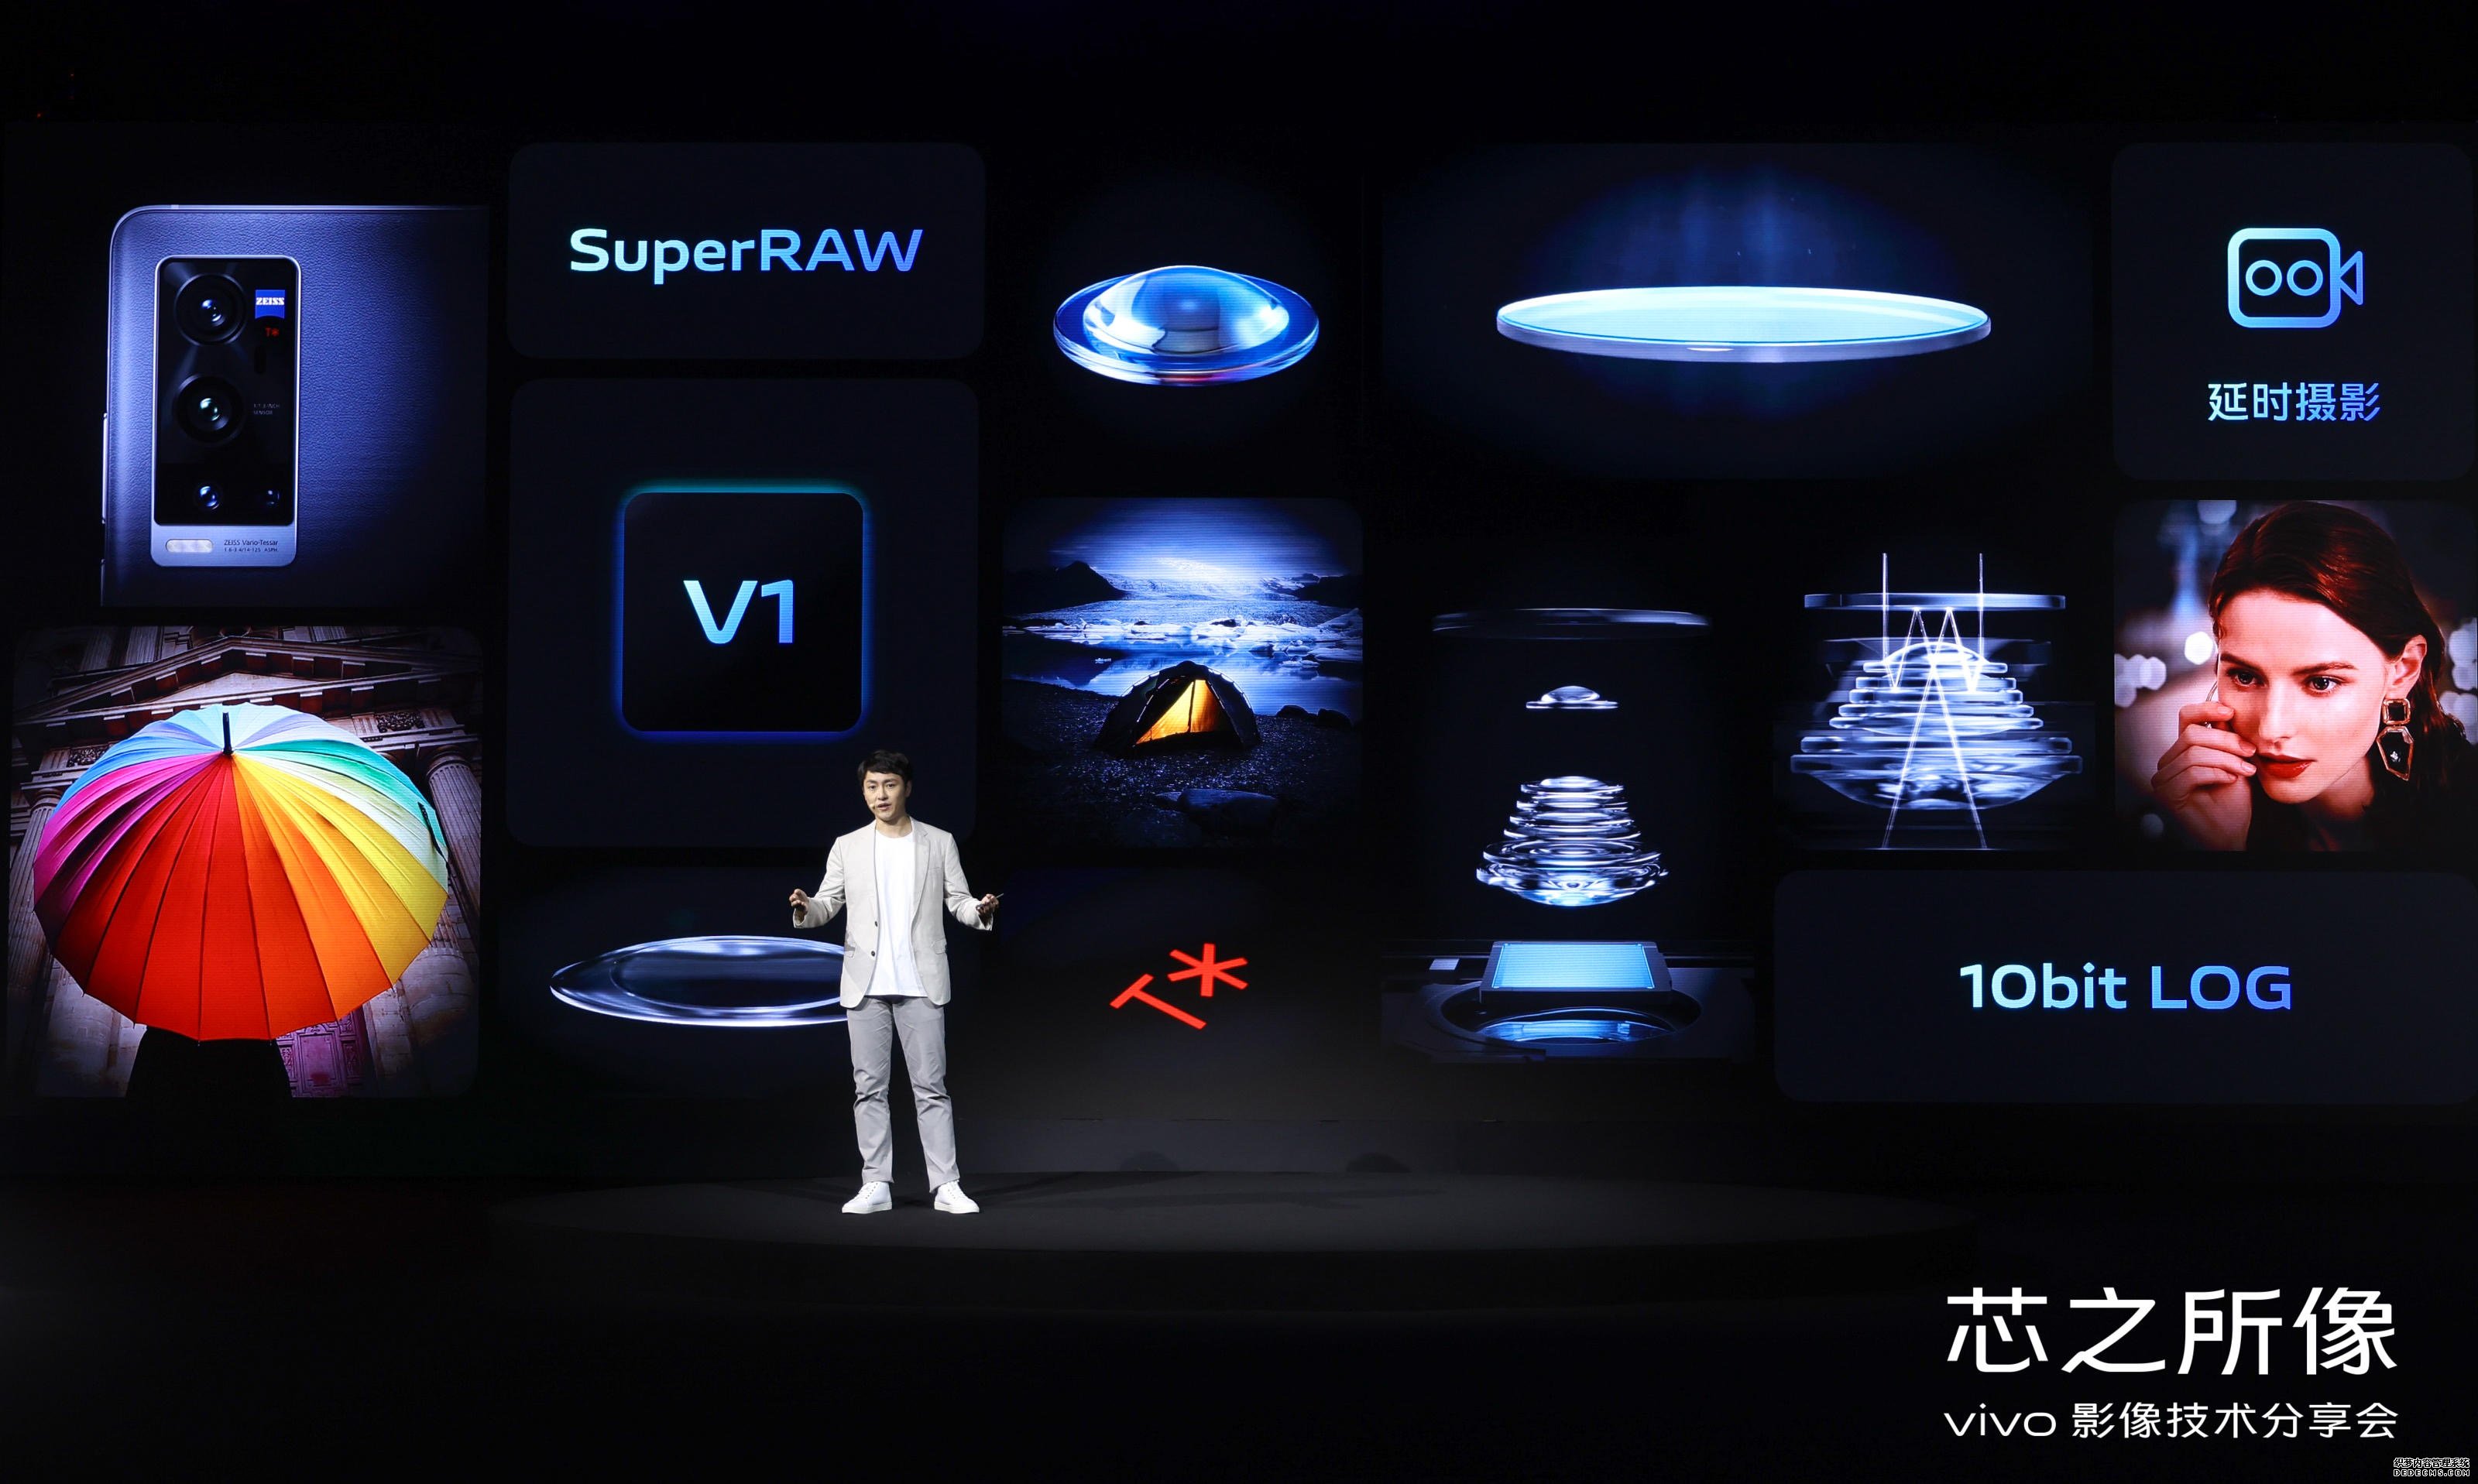 蓝冠官网V1 自研芯片和玻璃镜片是 Vivo 探索影像的新方向